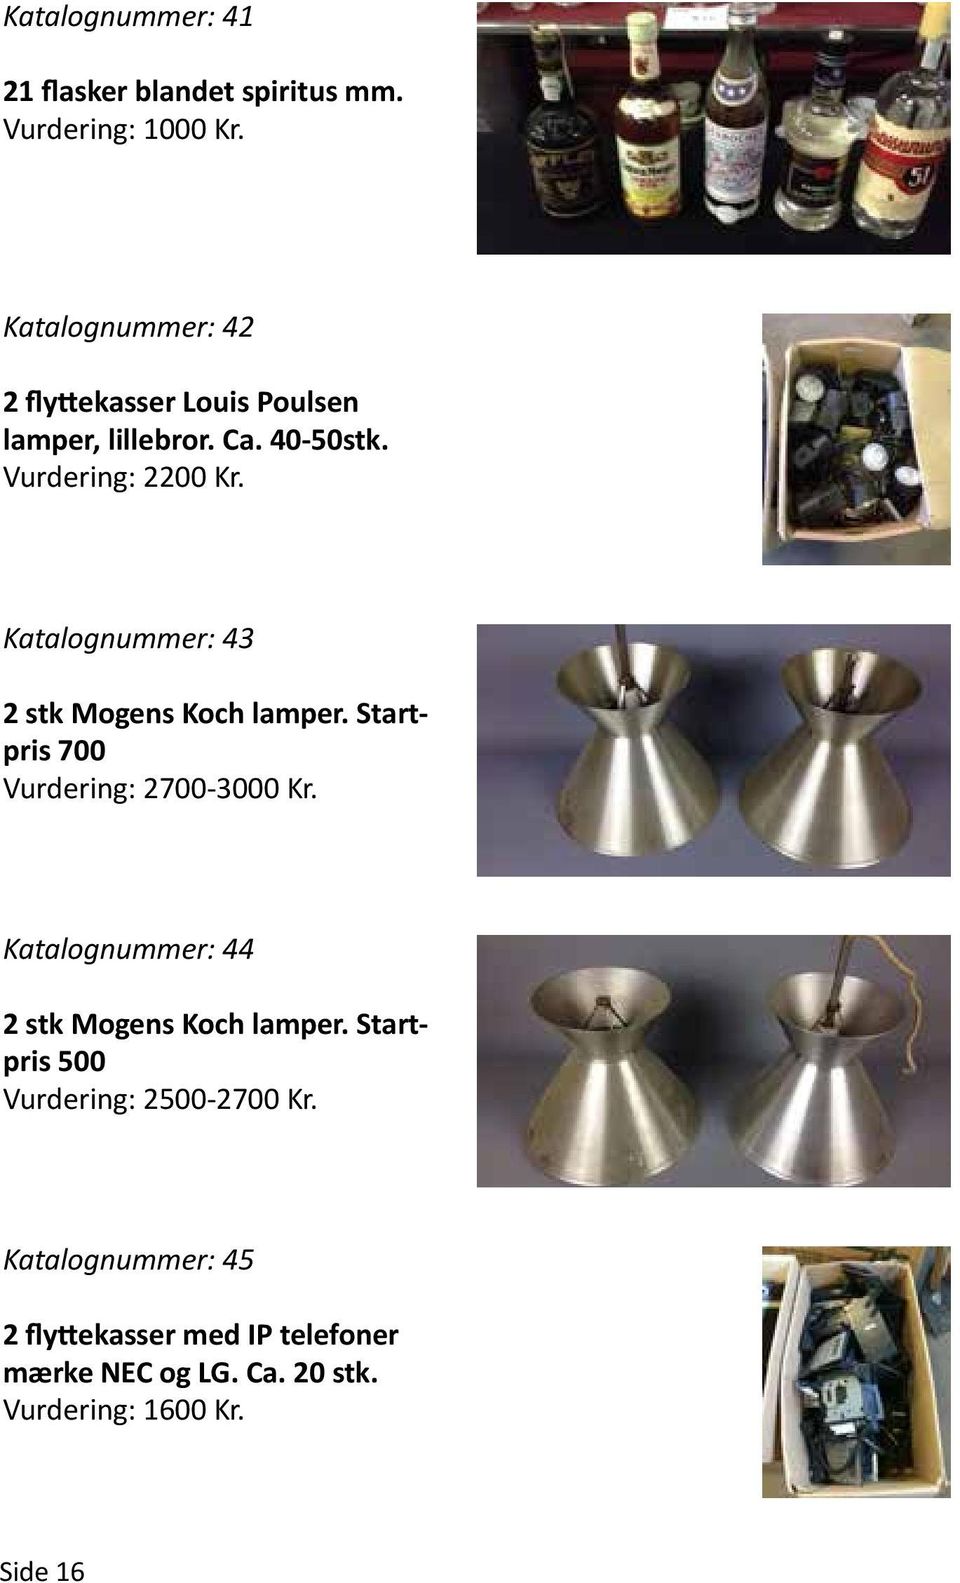 Katalognummer: 43 2 stk Mogens Koch lamper. Startpris 700 Vurdering: 2700-3000 Kr.